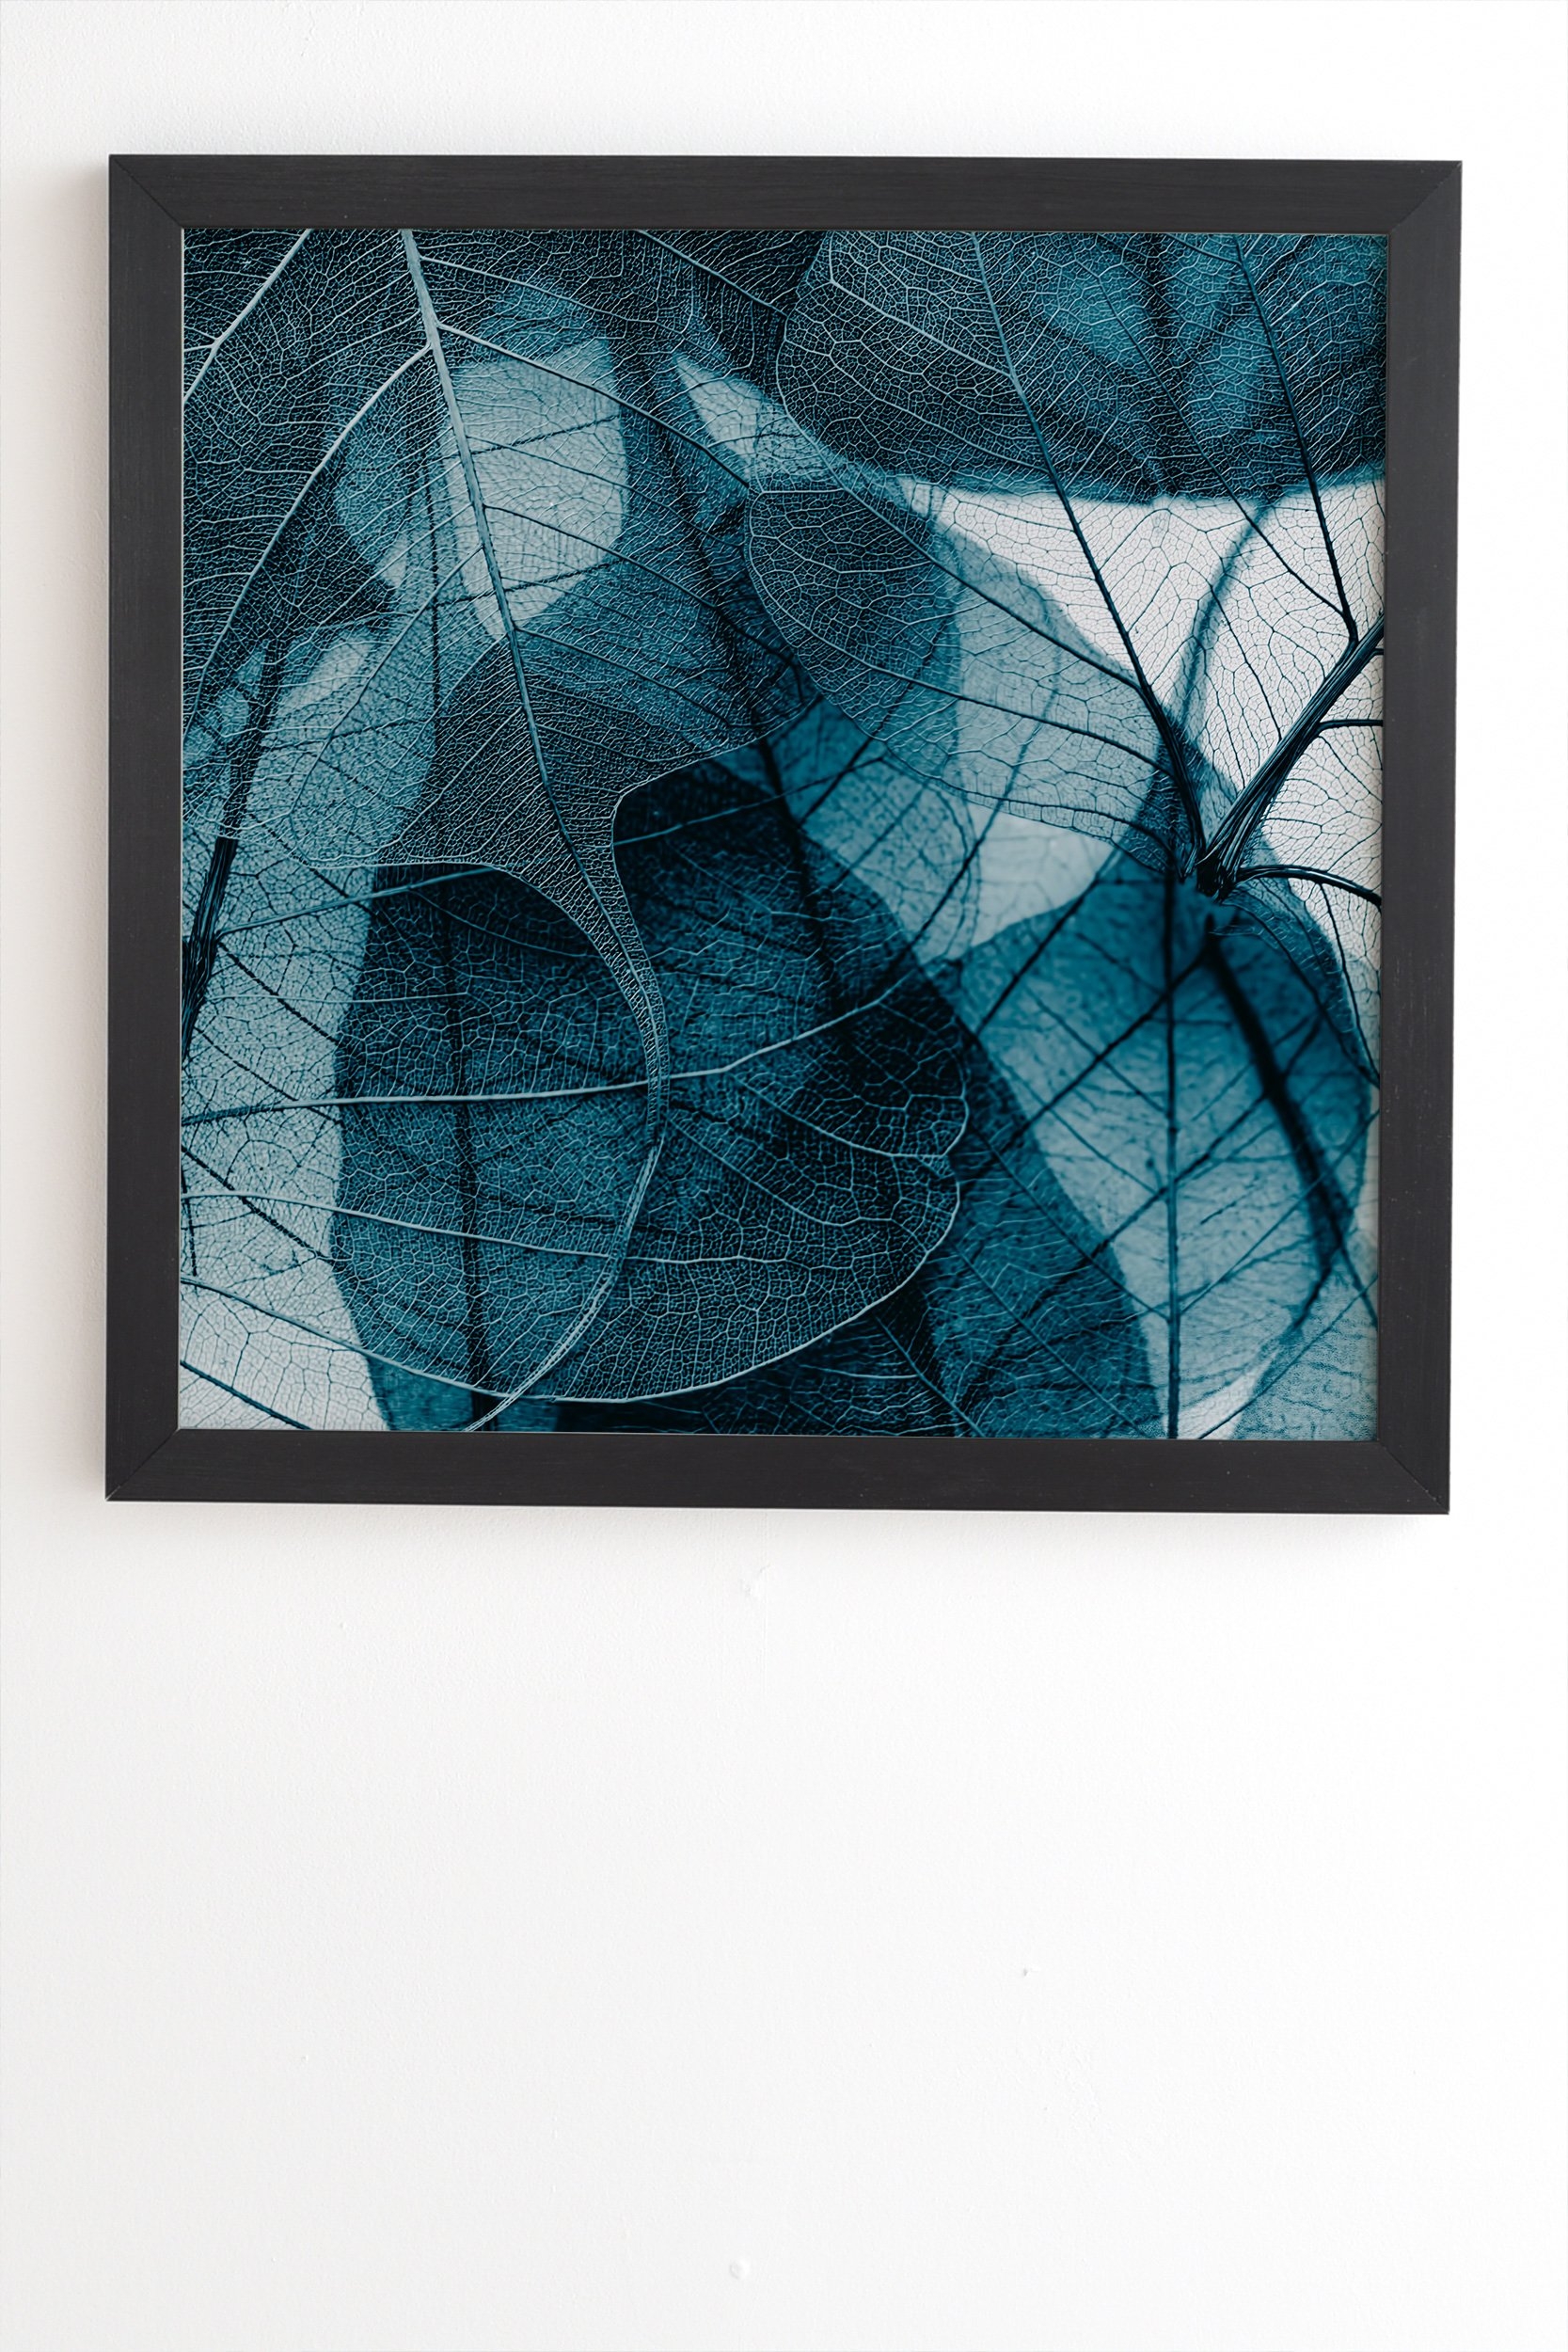 Ingrid Beddoes Denim blue Black Framed Wall Art - 8" x 9.5" - Image 1